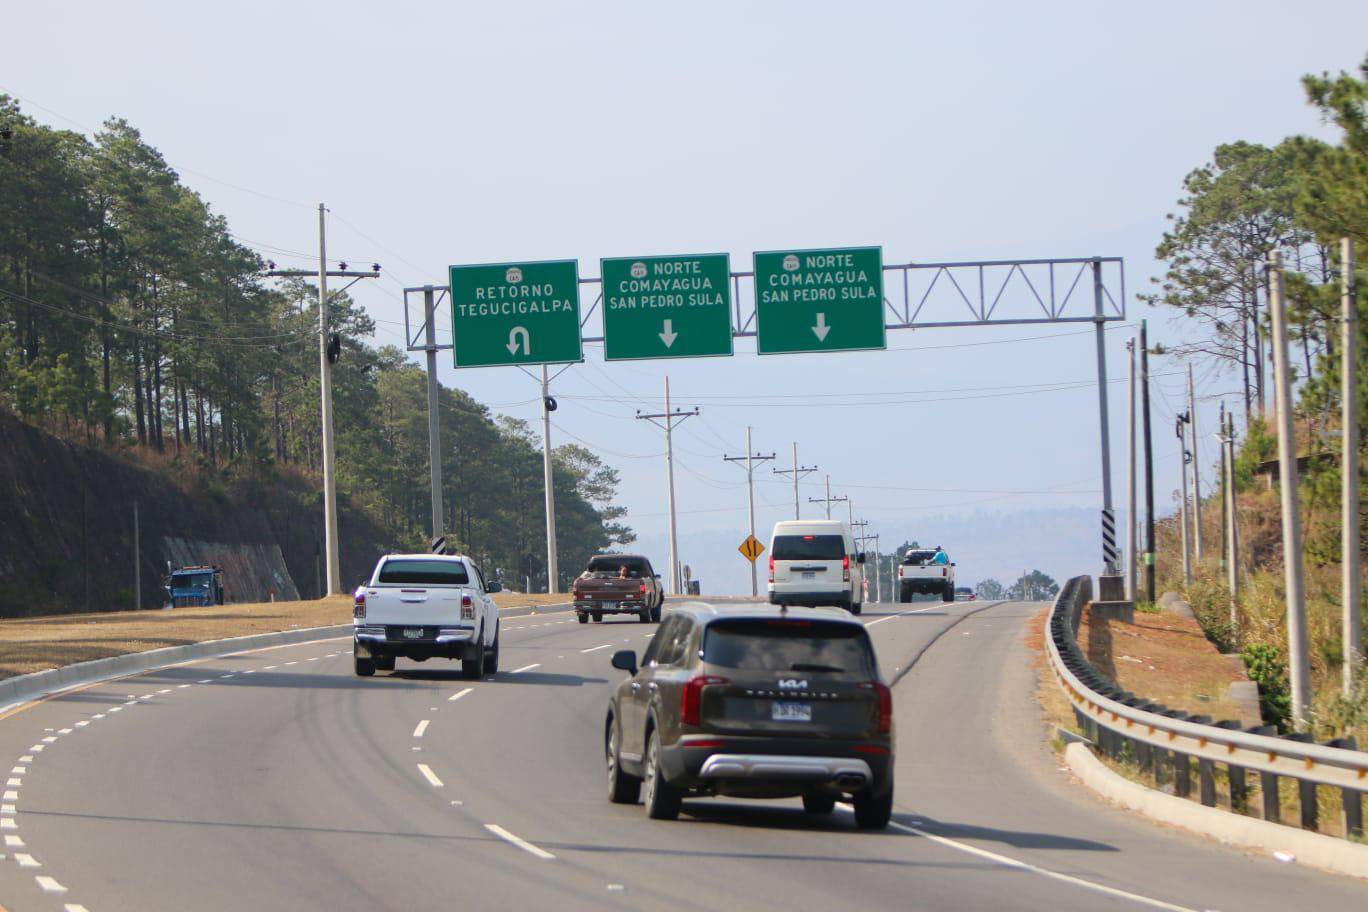 $!Una de las carreteras en mejor estado es la CA-5, que lleva al norte de Honduras. En el tramo hay varios peajes.